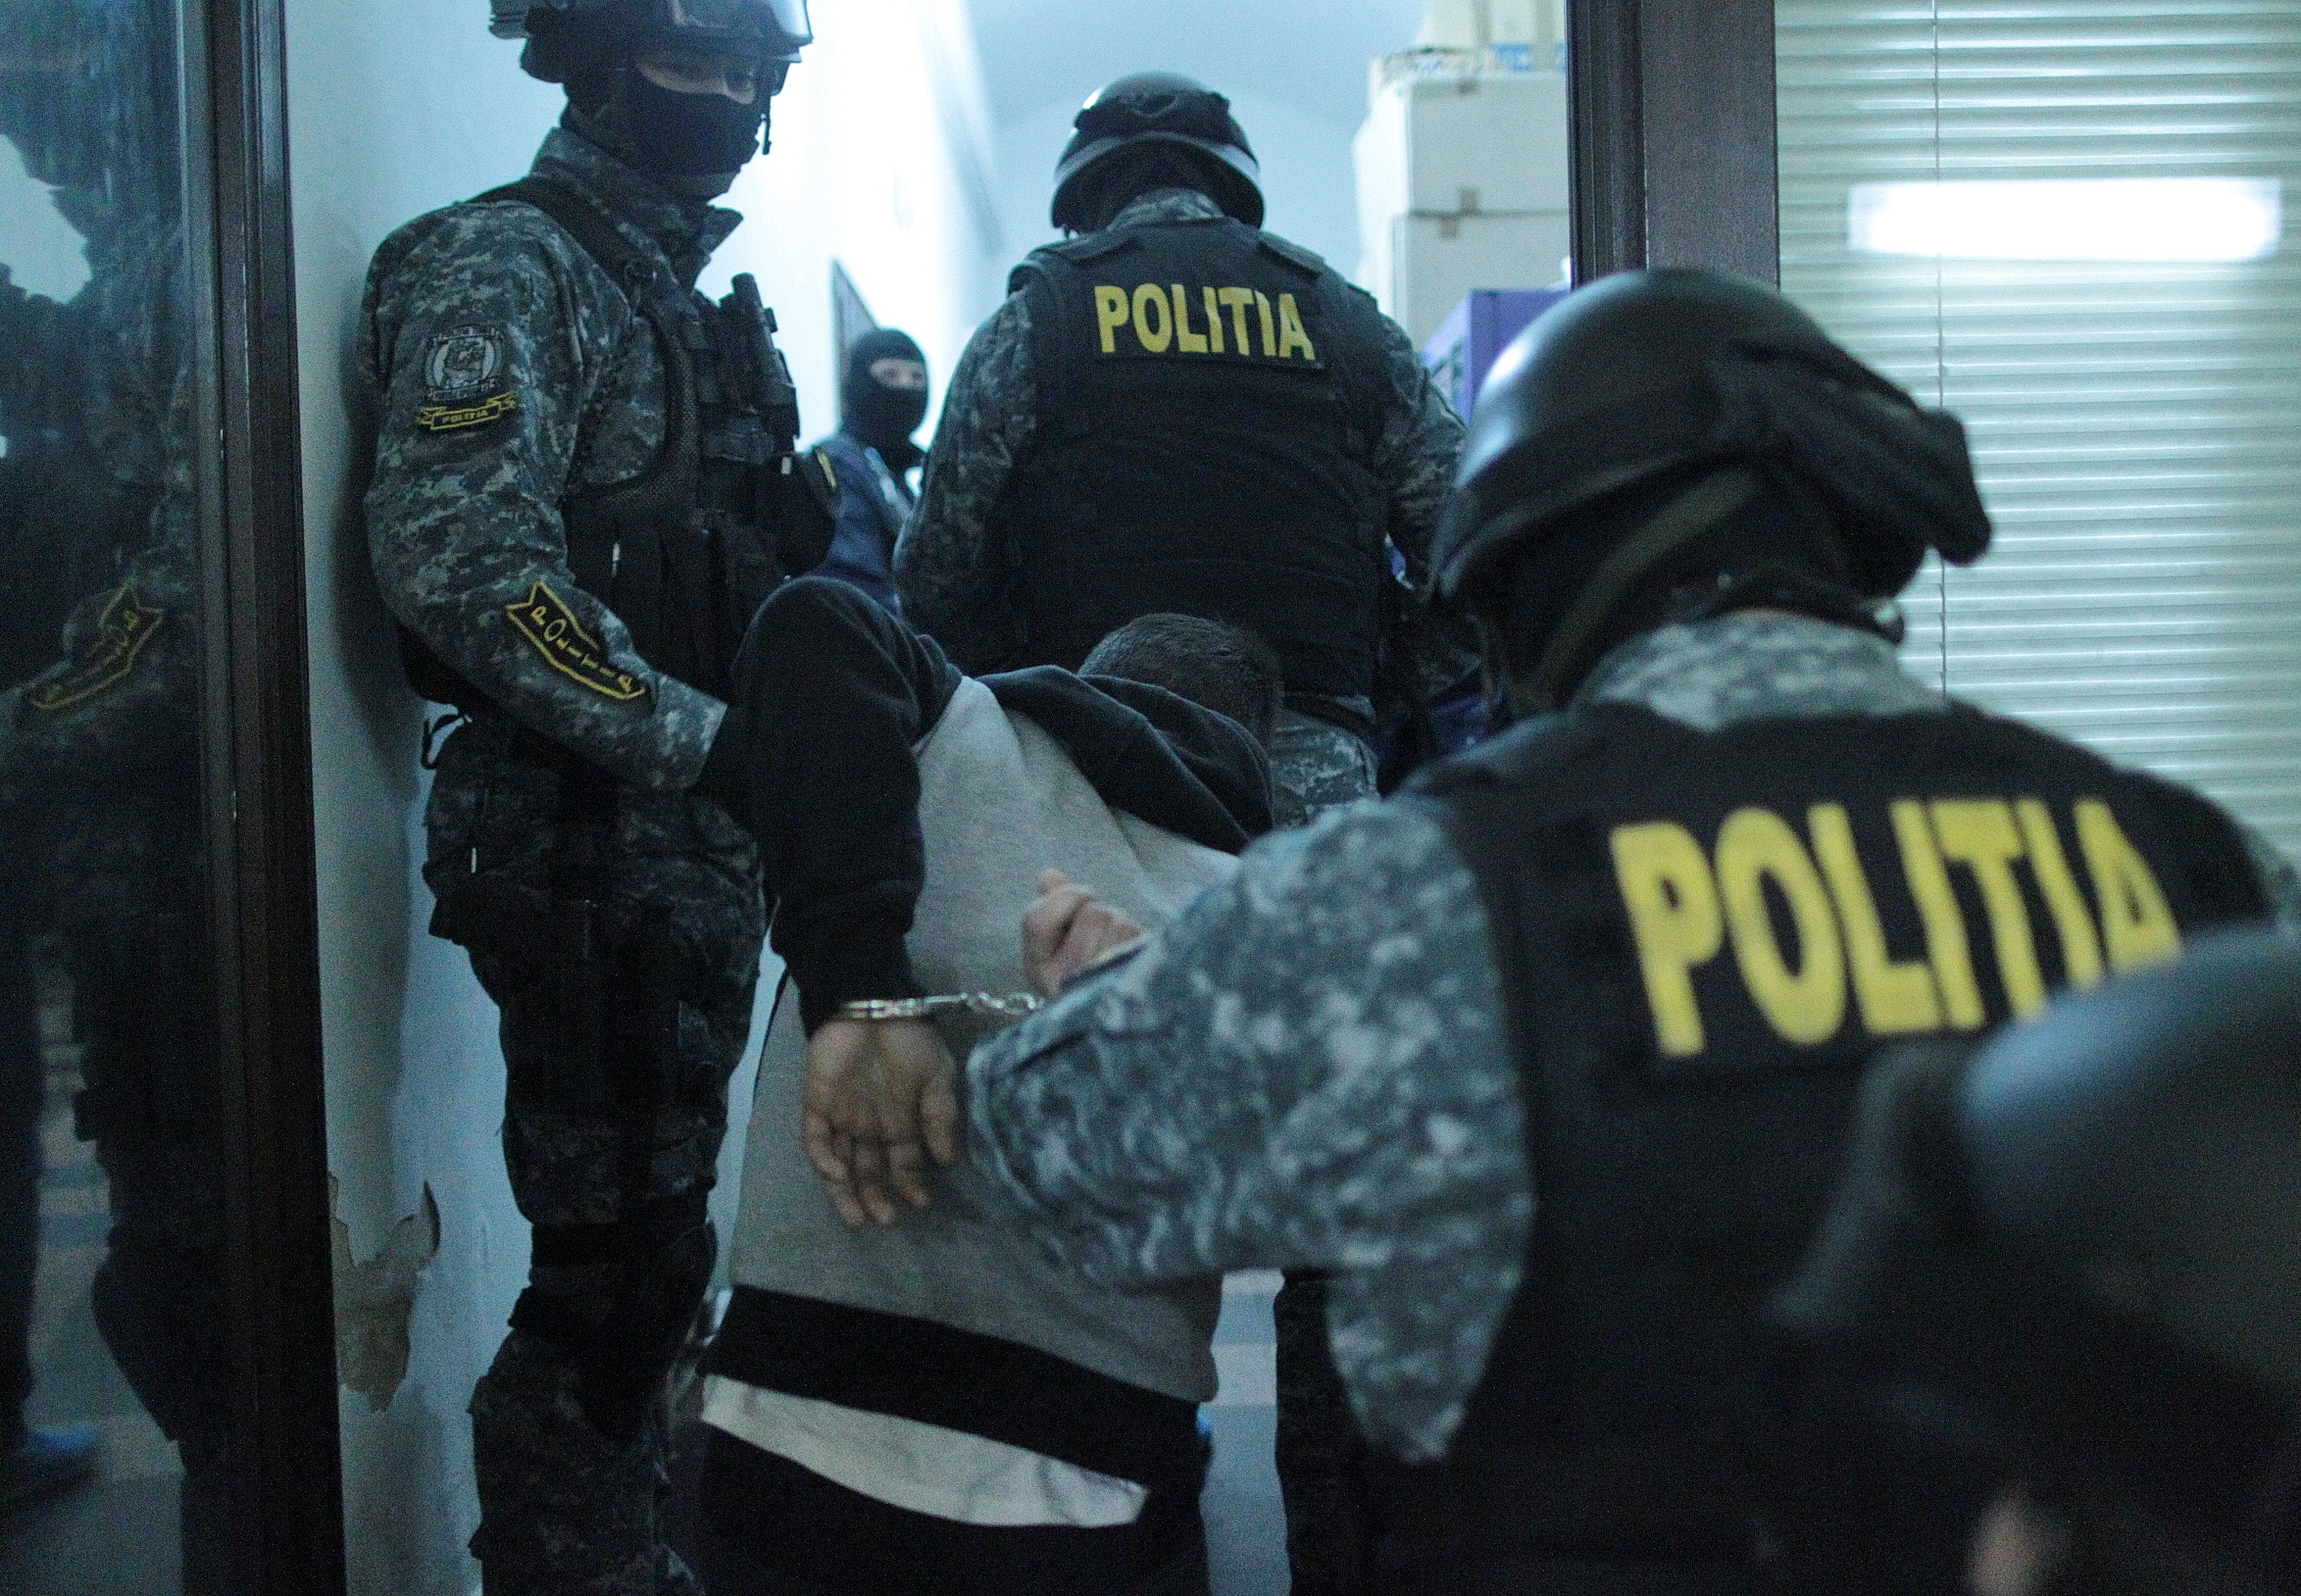 Percheziţii în Craiova. Un bărbat care vindea droguri de mare risc a fost arestat preventiv